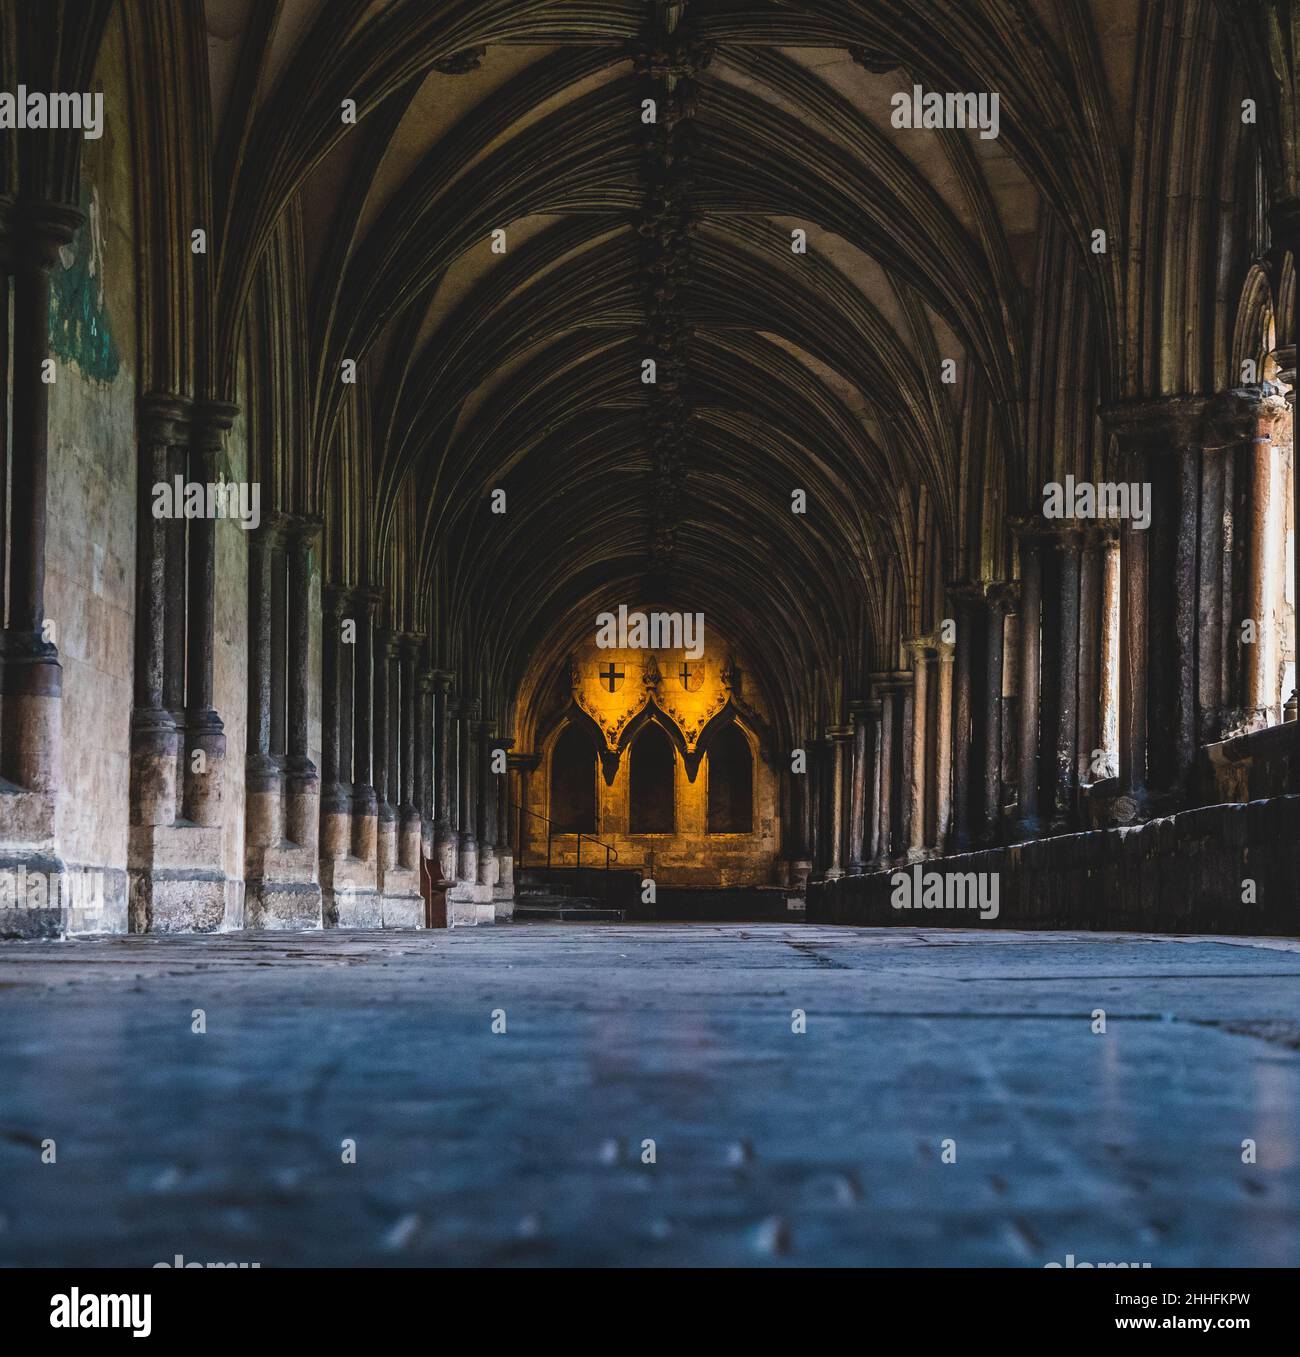 Photo à angle bas du sol en pierre brillante des cloîtres à la cathédrale de Norwich en Angleterre. Banque D'Images